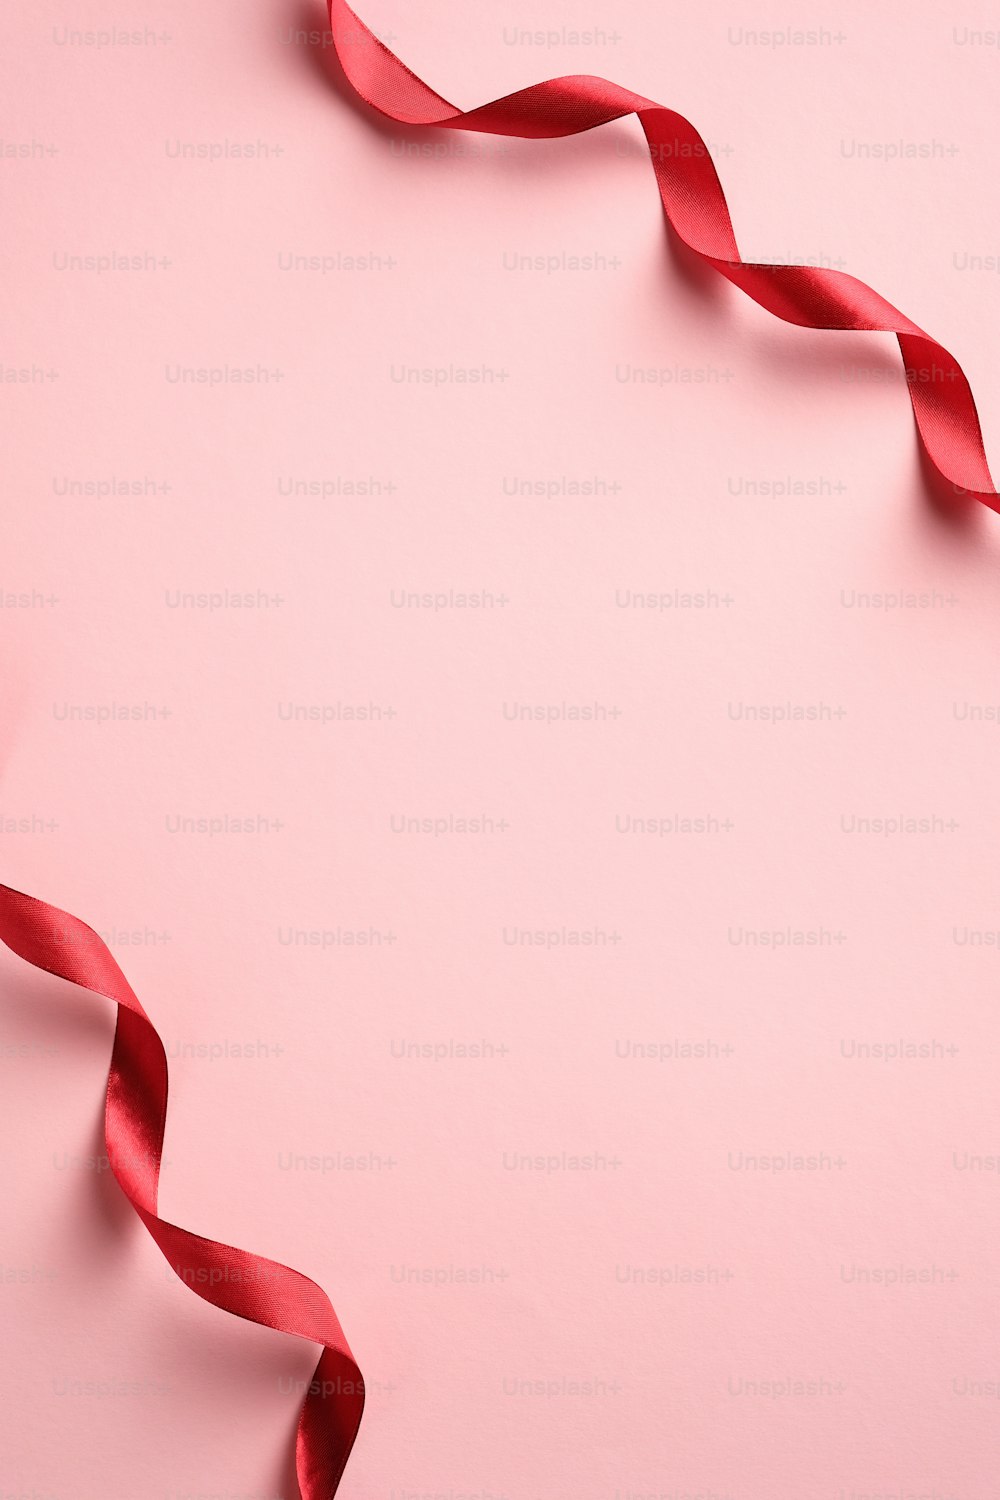 バレンタインデー、誕生日、ピンクの背景に赤いリボンが描かれた母の日の縦型バナー テンプレート。ミニマリストスタイル。フラットレイ、上面図。